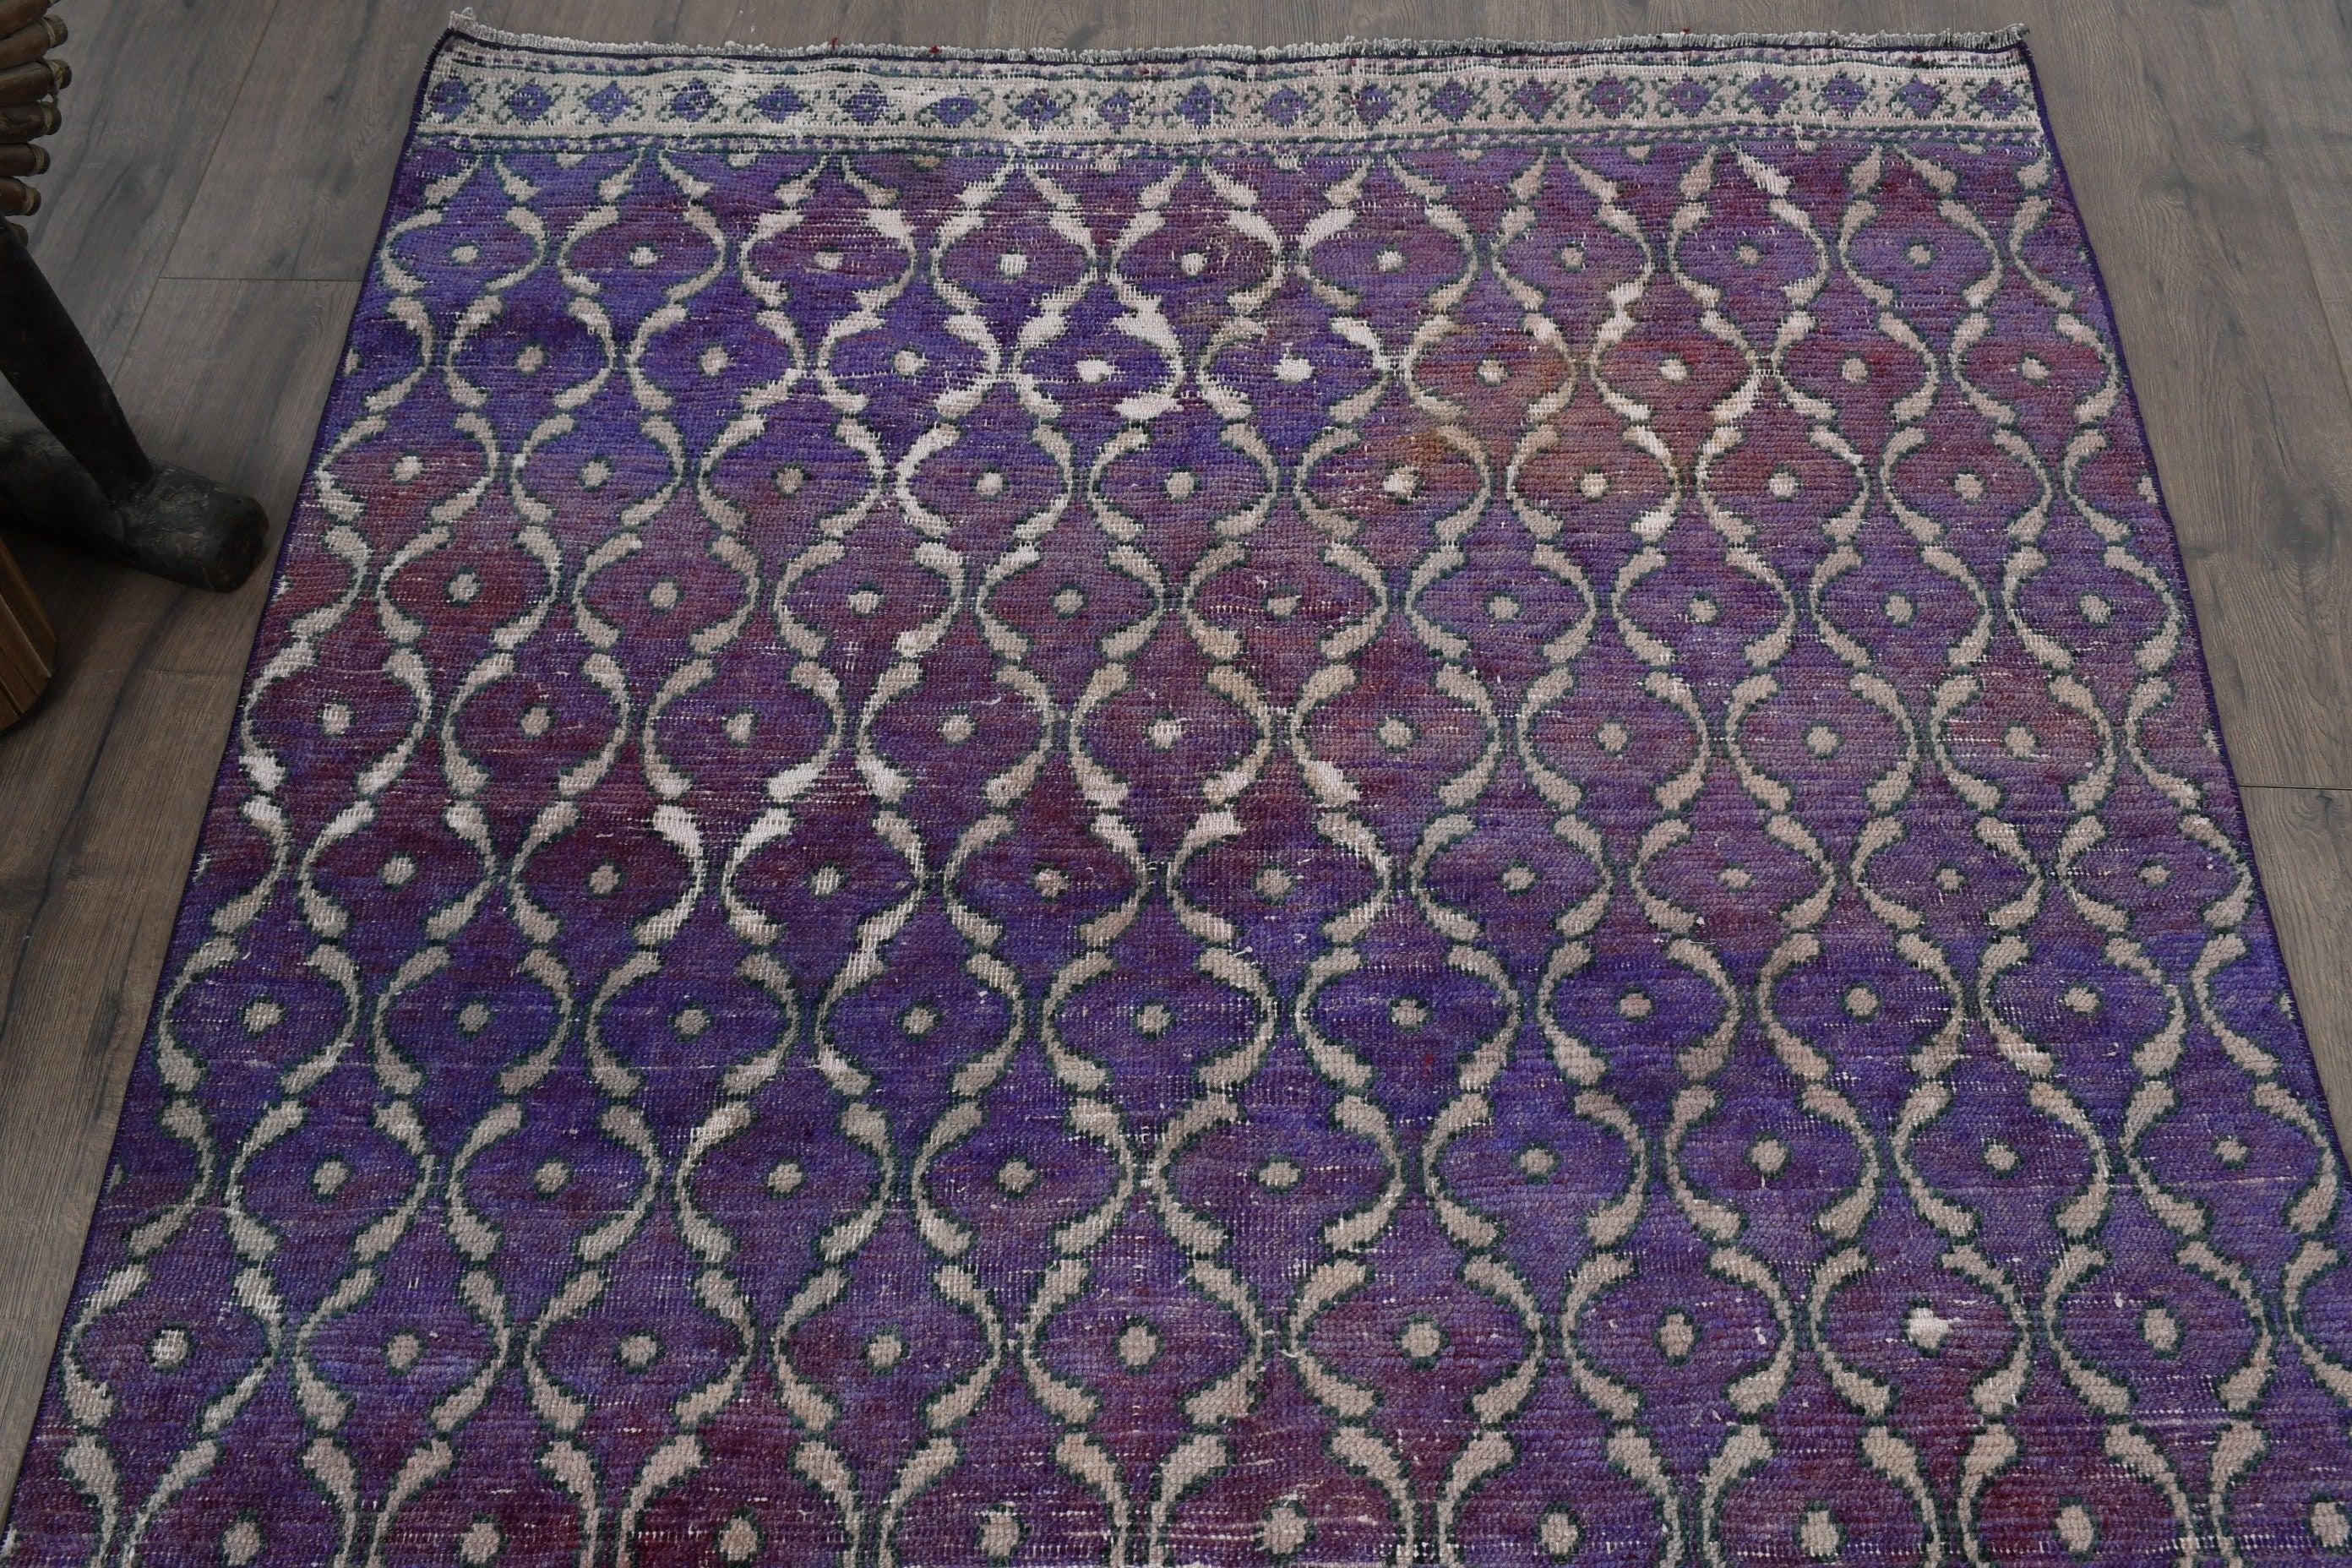 Turkish Rugs, Organic Rug, Rugs for Nursery, Oriental Rug, 4x9.9 ft Area Rugs, Purple Antique Rug, Vintage Rugs, Kitchen Rug, Indoor Rugs